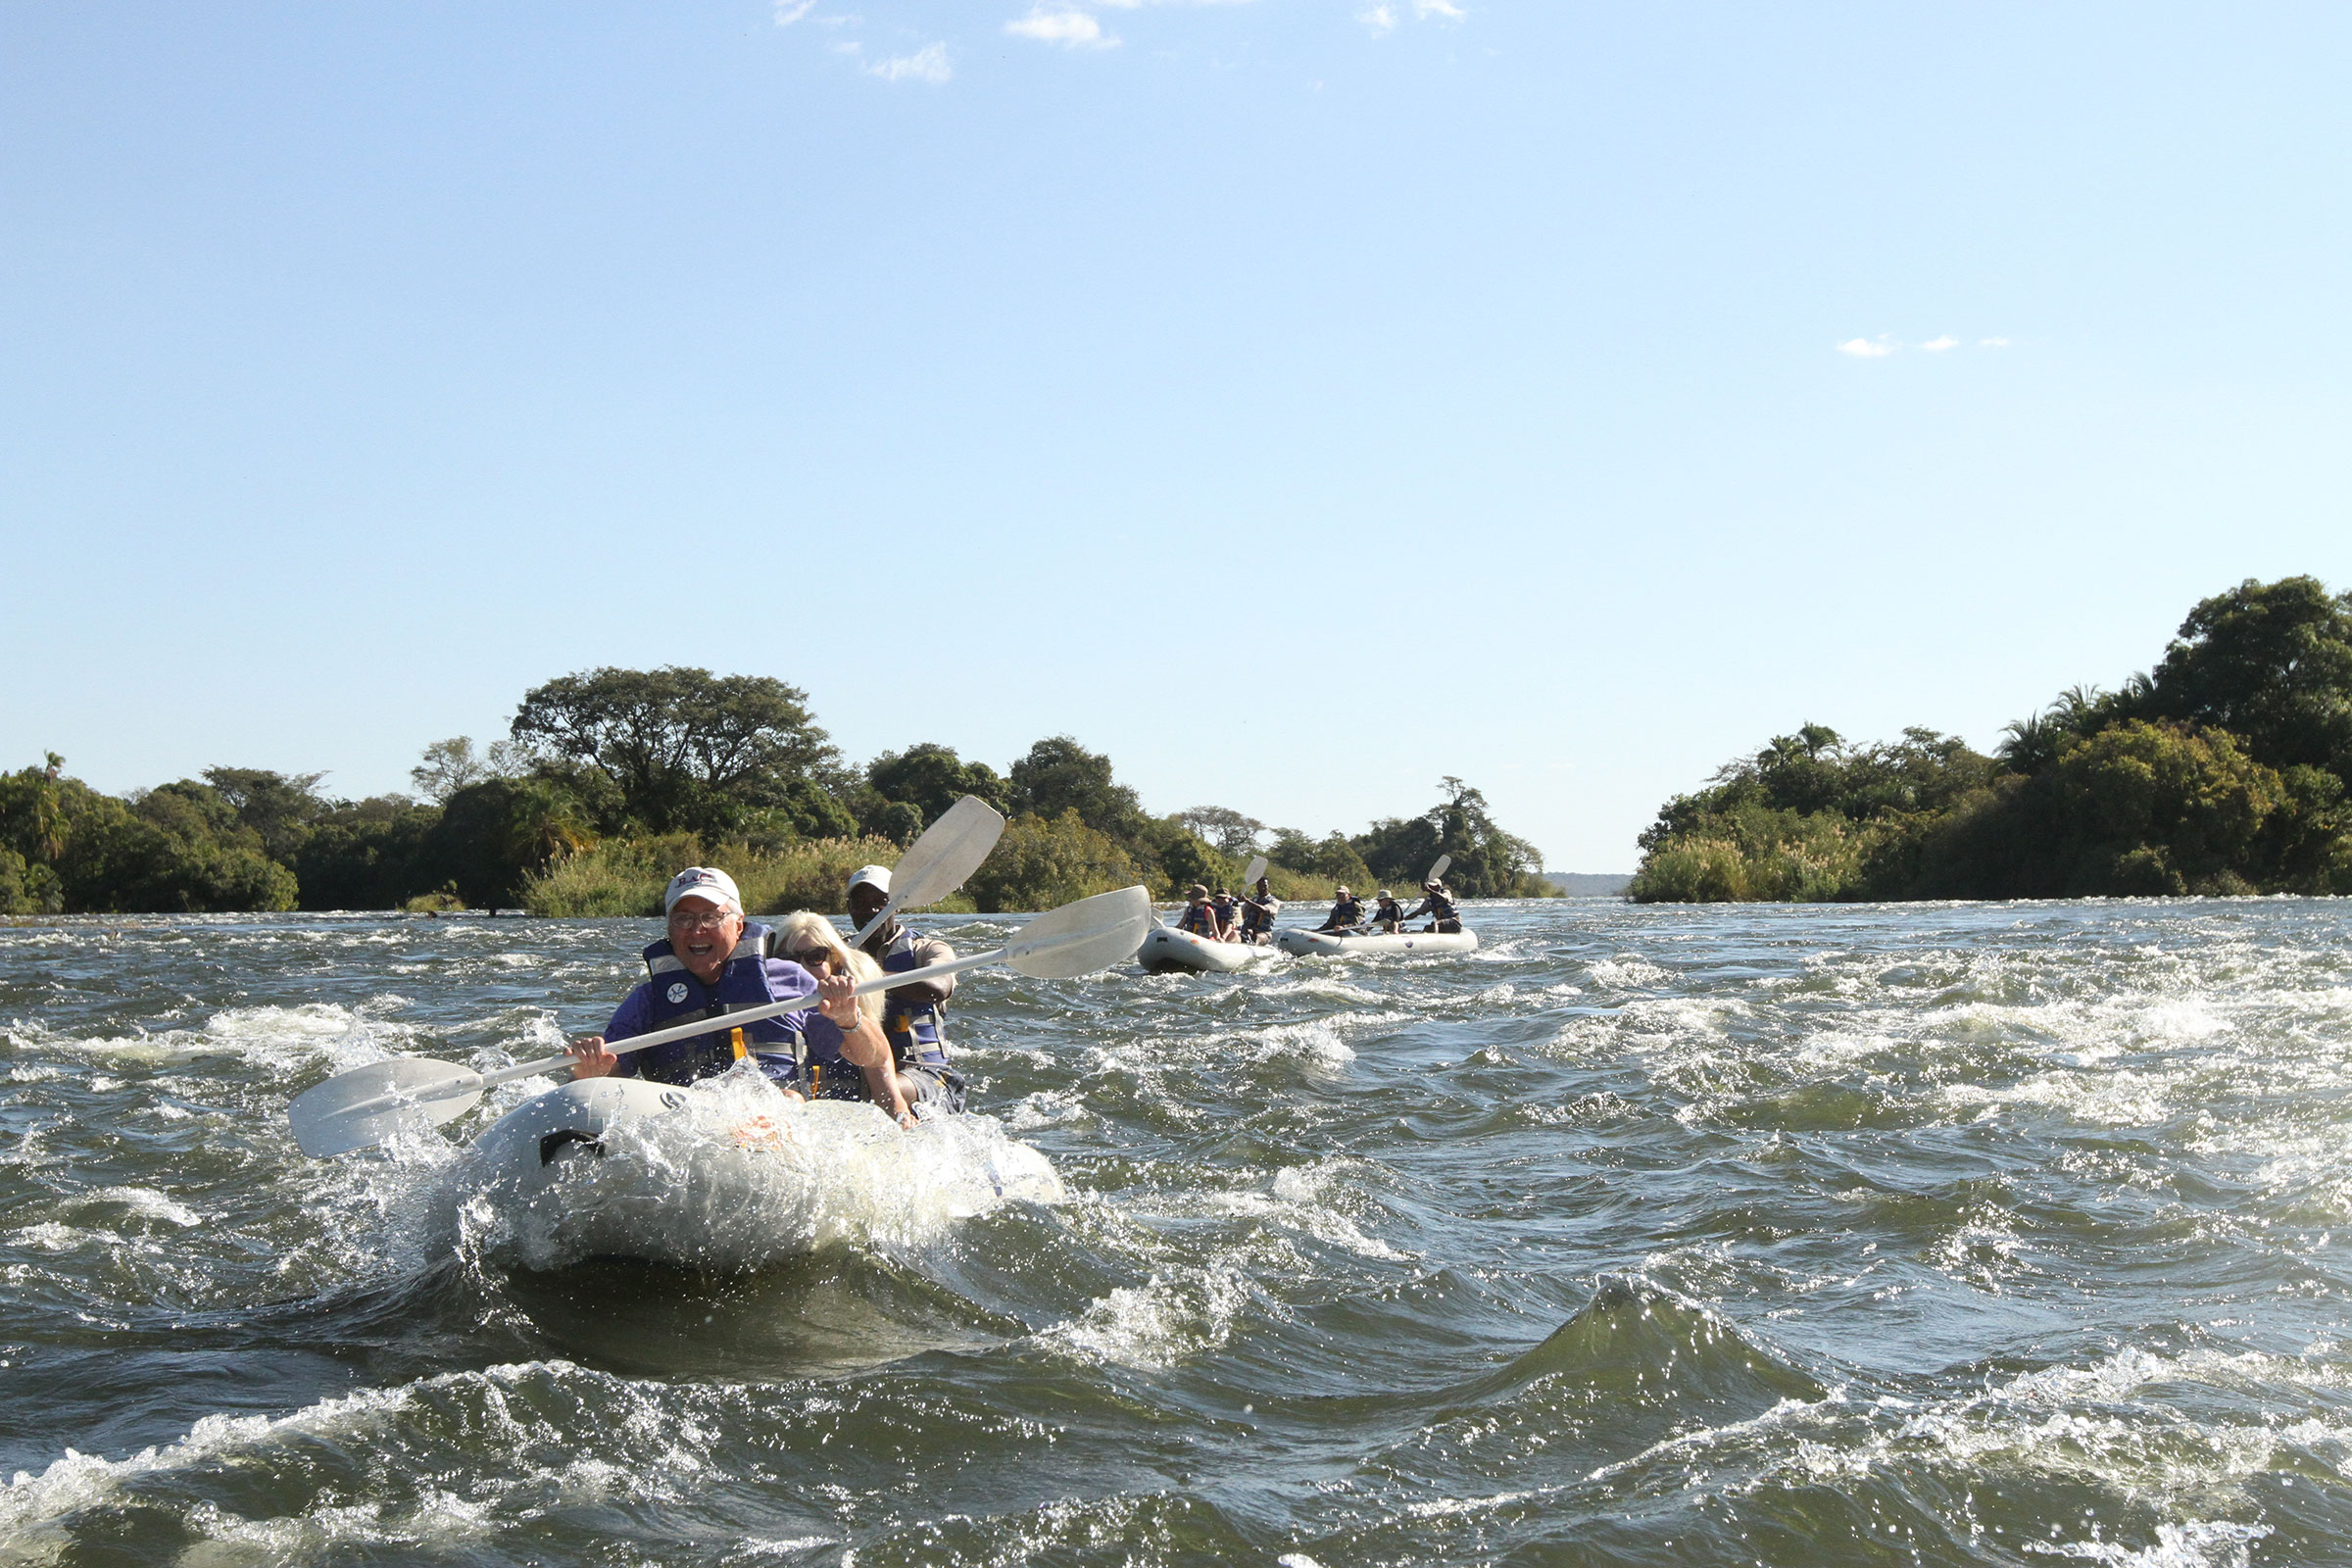 rafting the Zambezi river